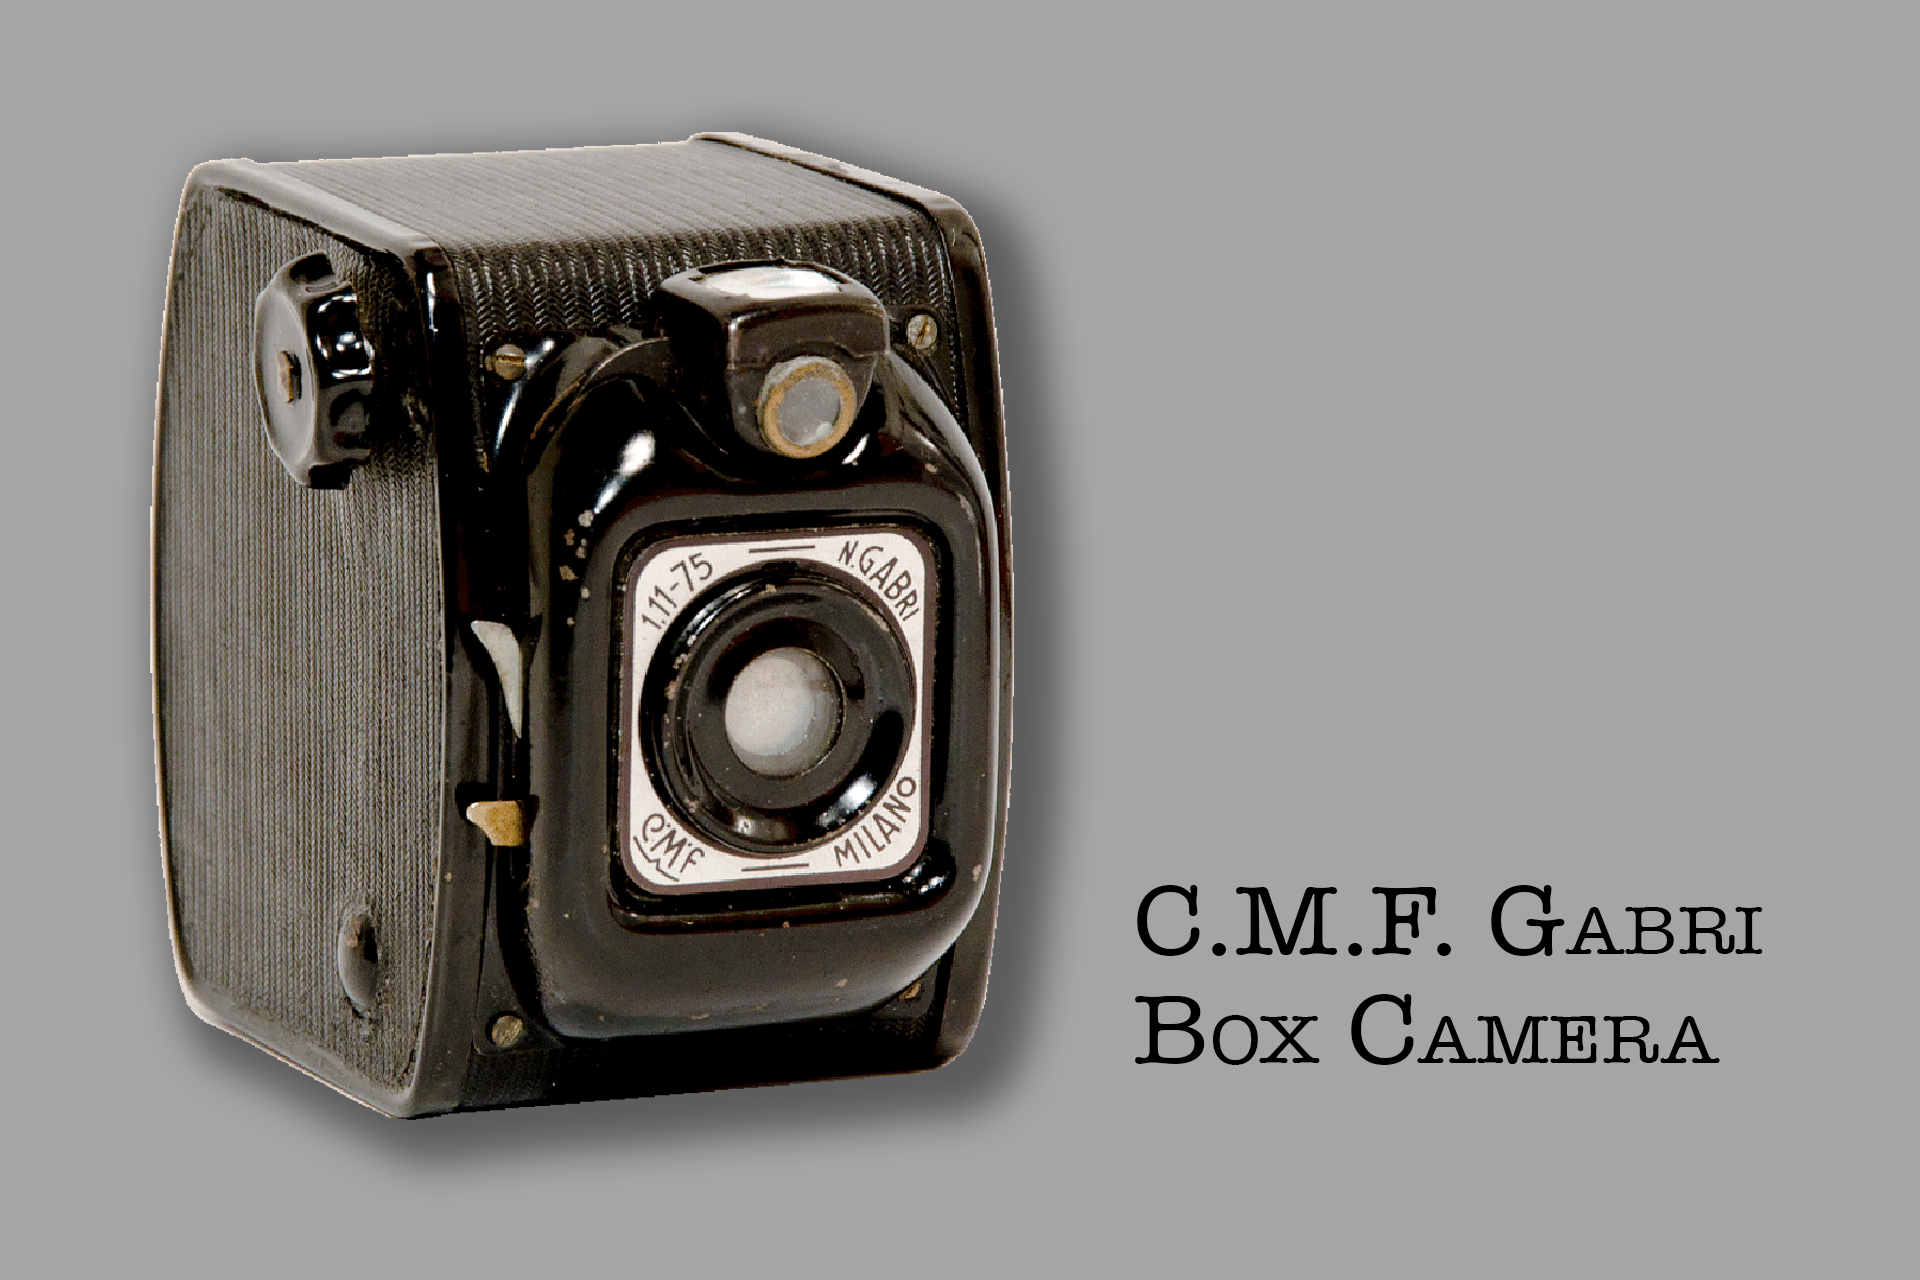 1920x1280px-Gabri-Box-camera-vWA24